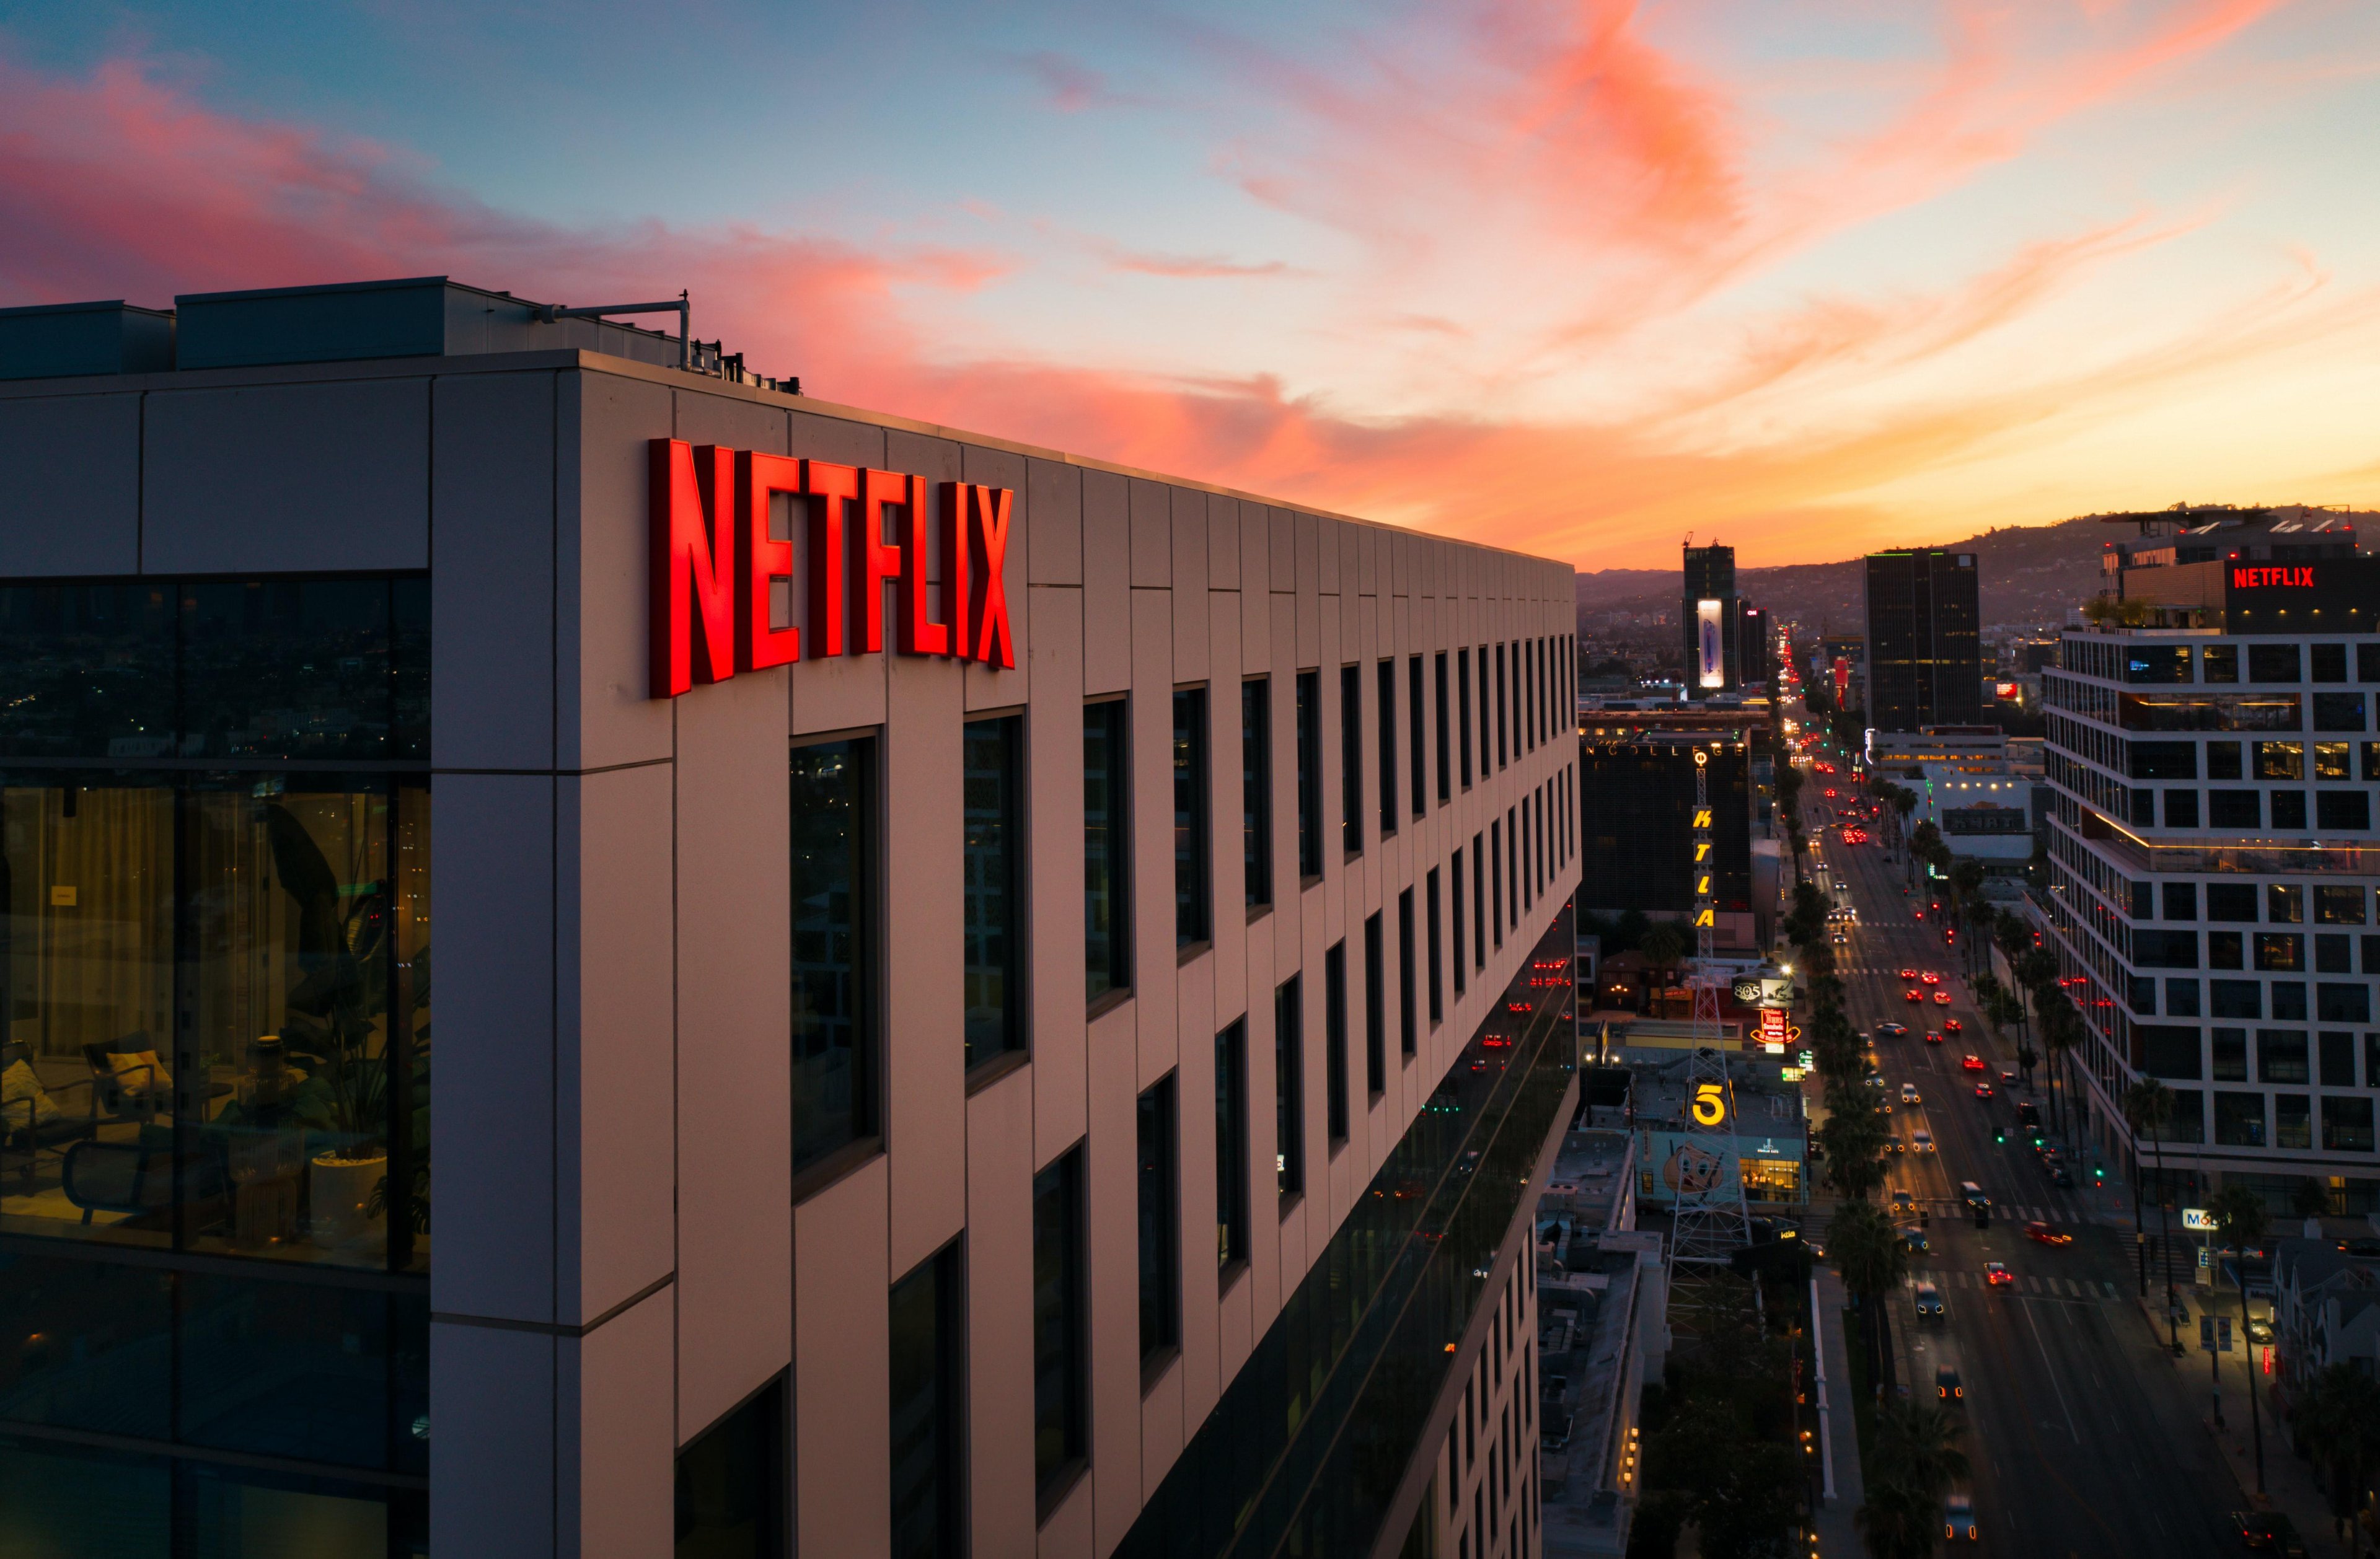 Enxadrista fecha acordo com Netflix para encerrar ação por difamação